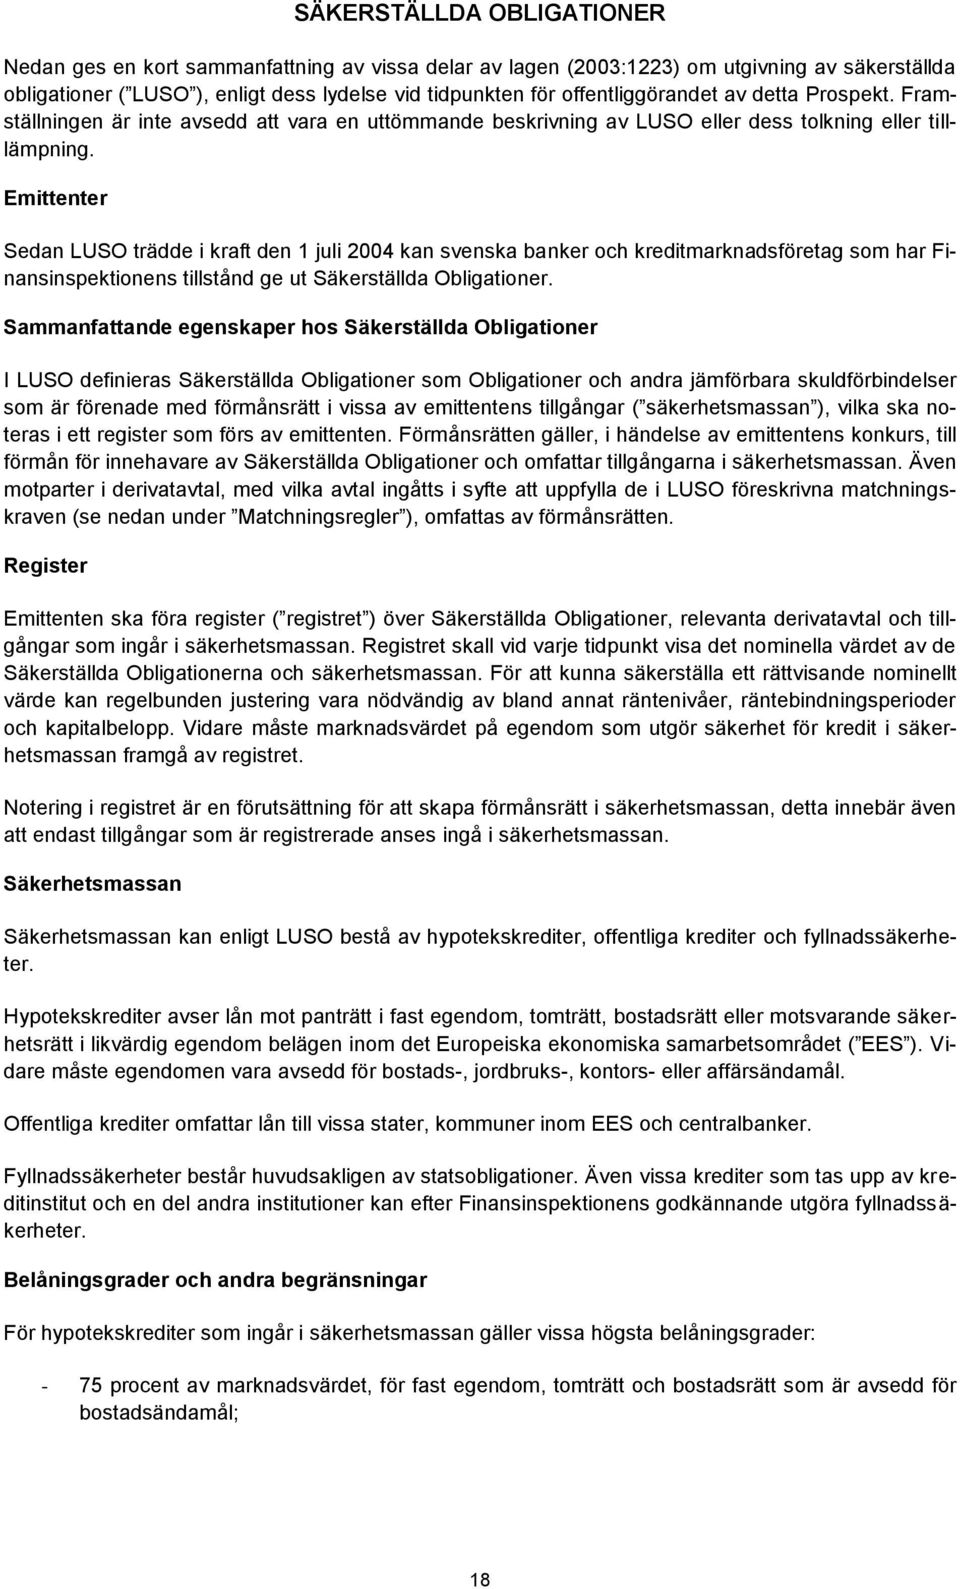 Emittenter Sedan LUSO trädde i kraft den 1 juli 2004 kan svenska banker och kreditmarknadsföretag som har Finansinspektionens tillstånd ge ut Säkerställda Obligationer.